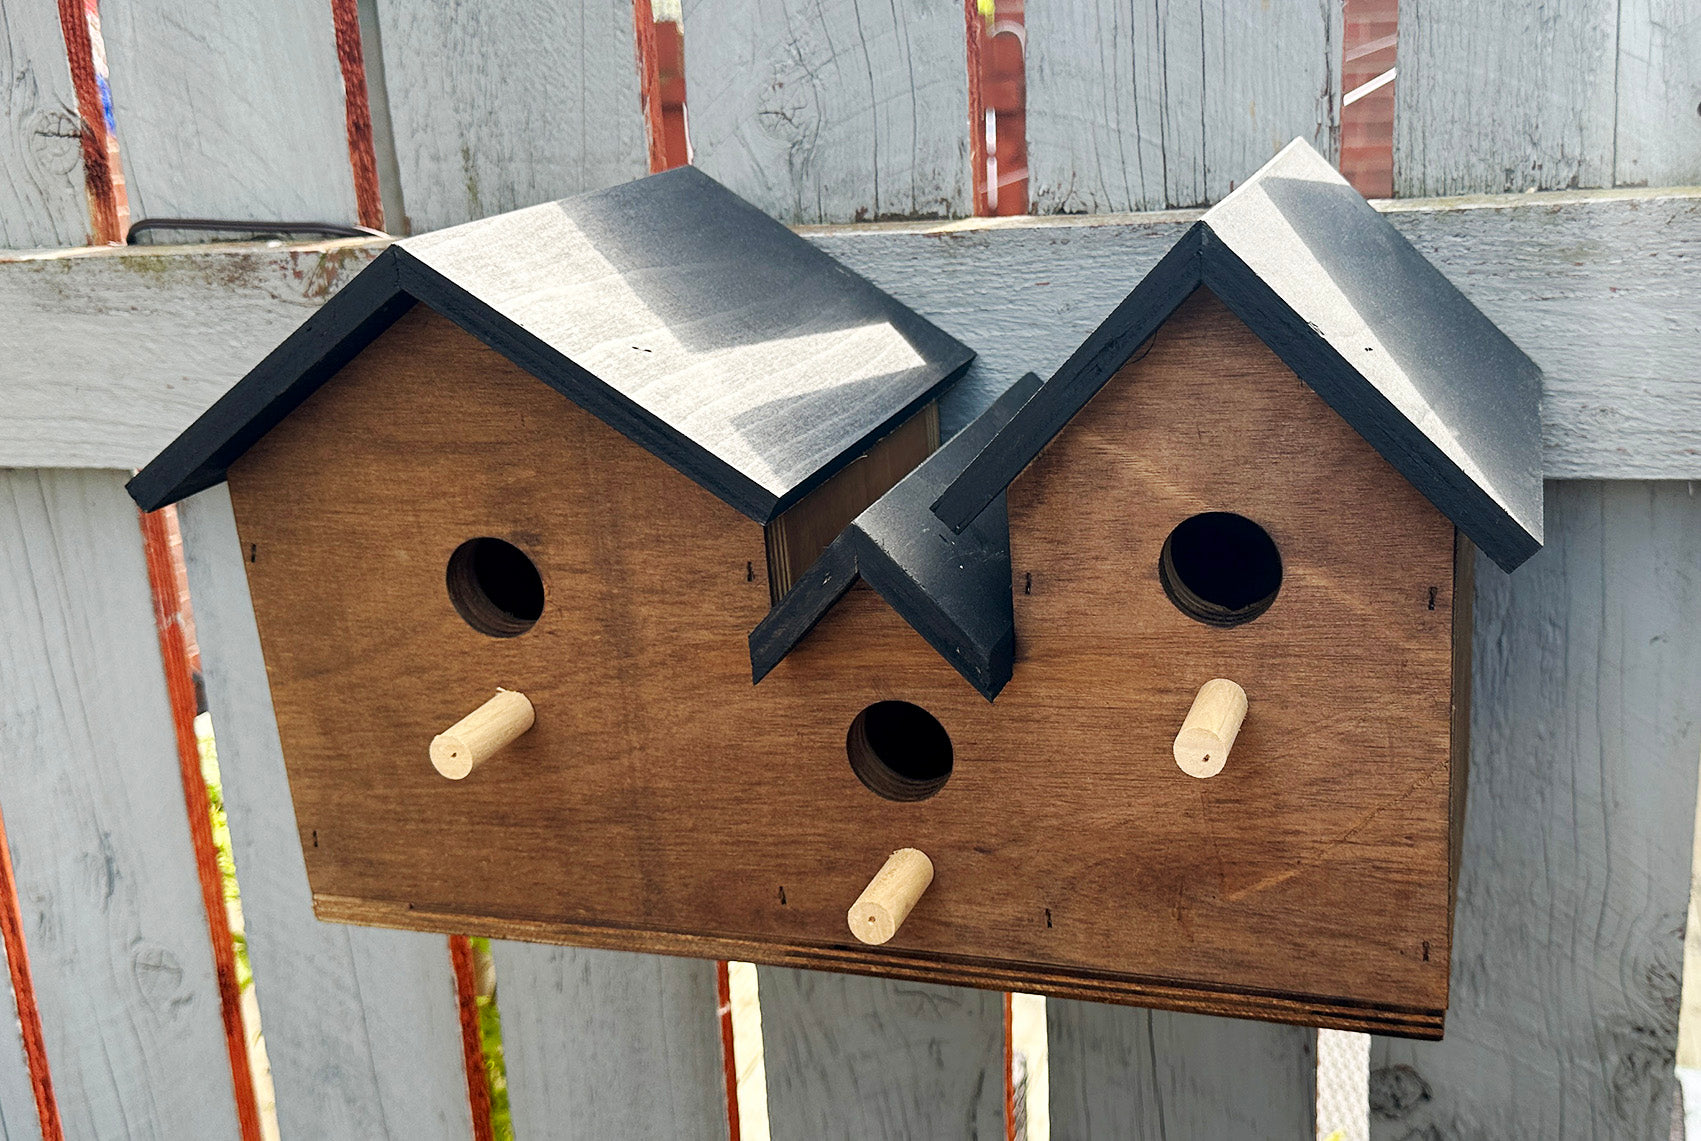 Wooden bird box a great bird nesting box a garden bird box or bird house